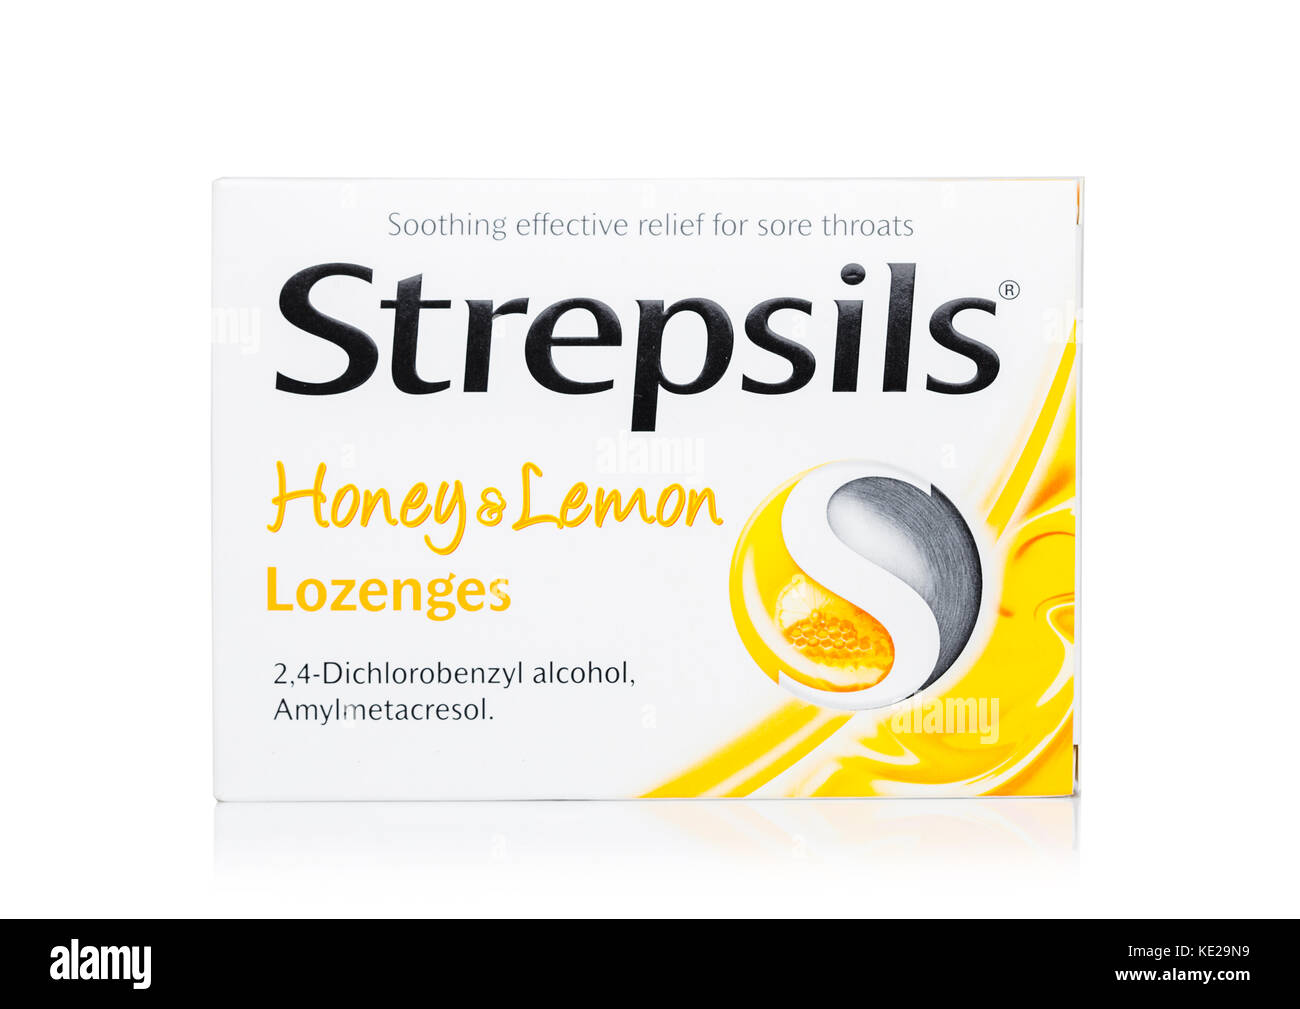 LONDON,UK - SEPTEMBER 24, 2017: Pack of Lozenges Strepsils Honey & Lemon on white background Stock Photo